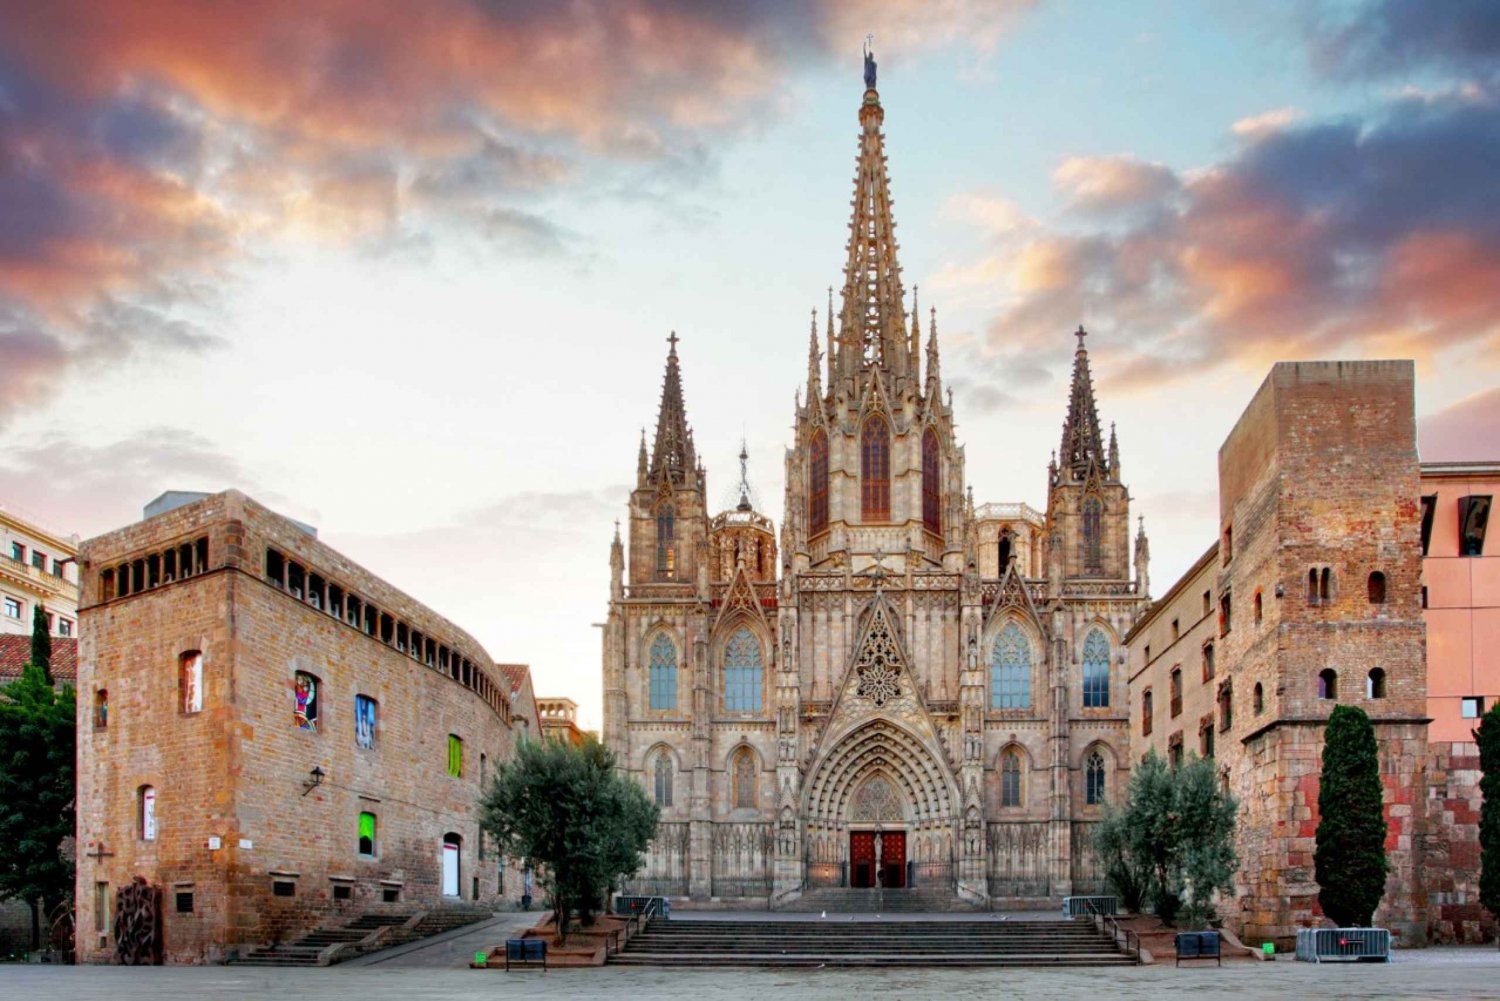 Catedral de Barcelona: Ingresso, tour guiado e experiência em RV